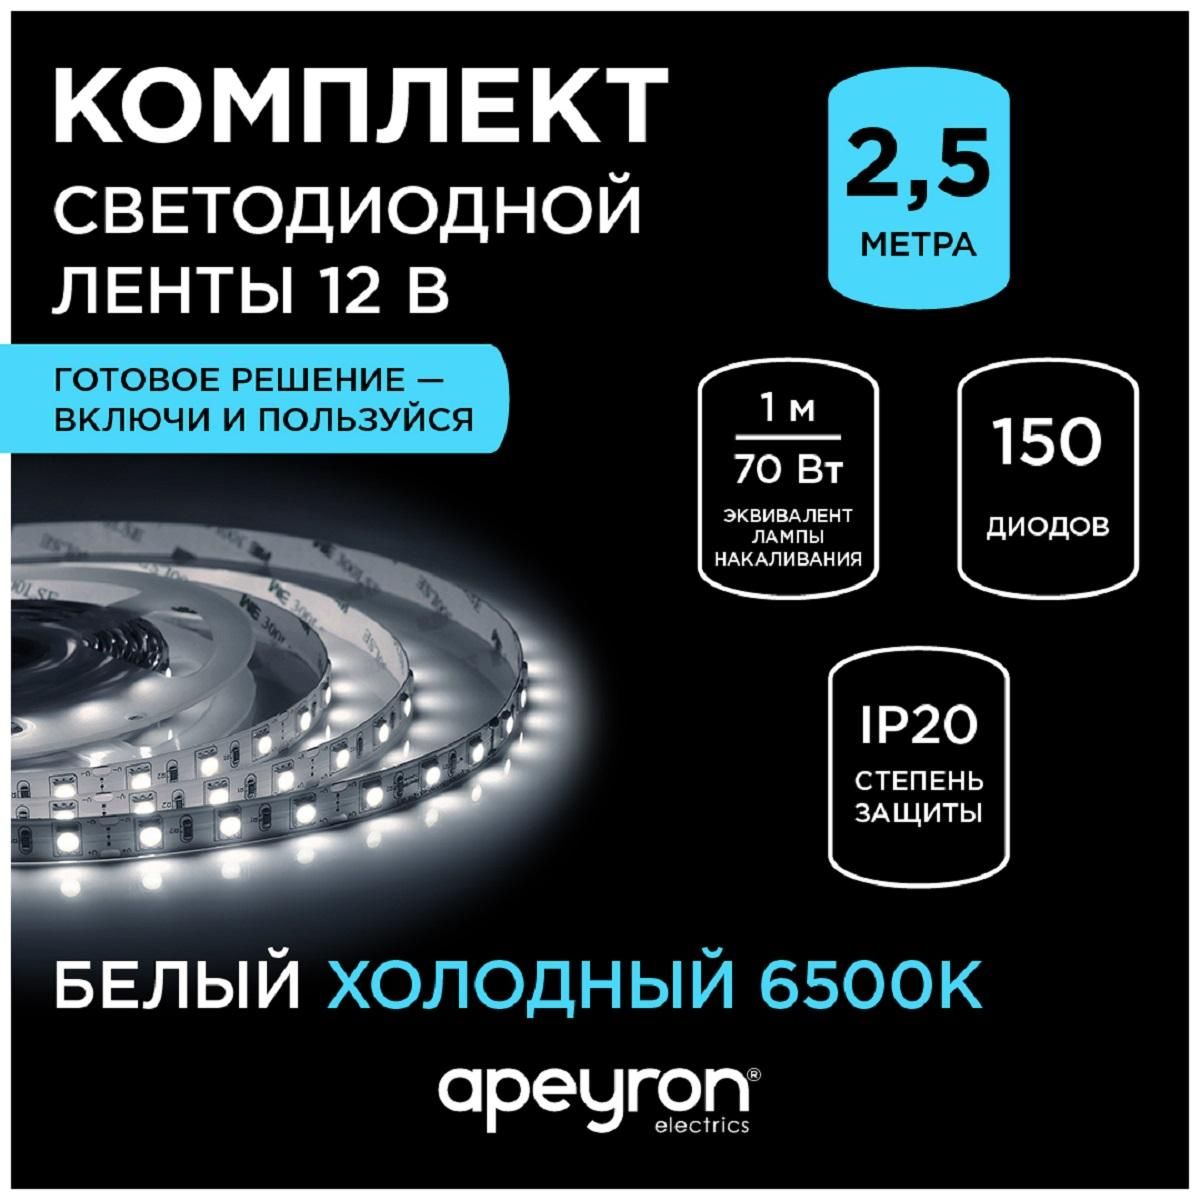 Комплект светодиодной ленты с аксессуарами smd5050 60д/м 12В 6500K IP20 2,5м Apeyron - Фото 8